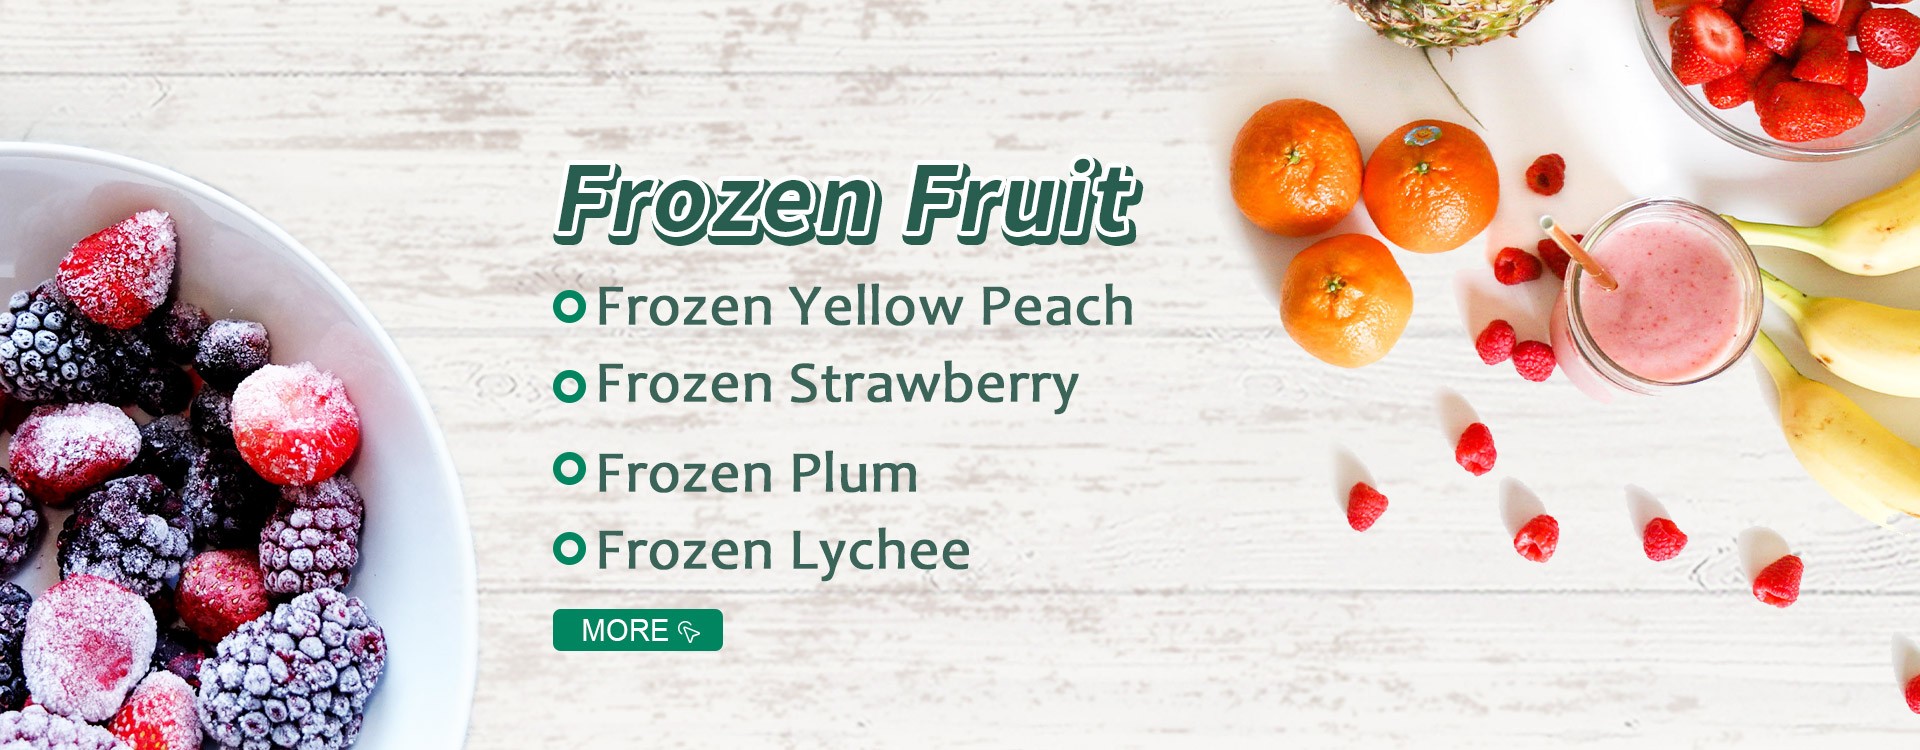 Frutas congeladas